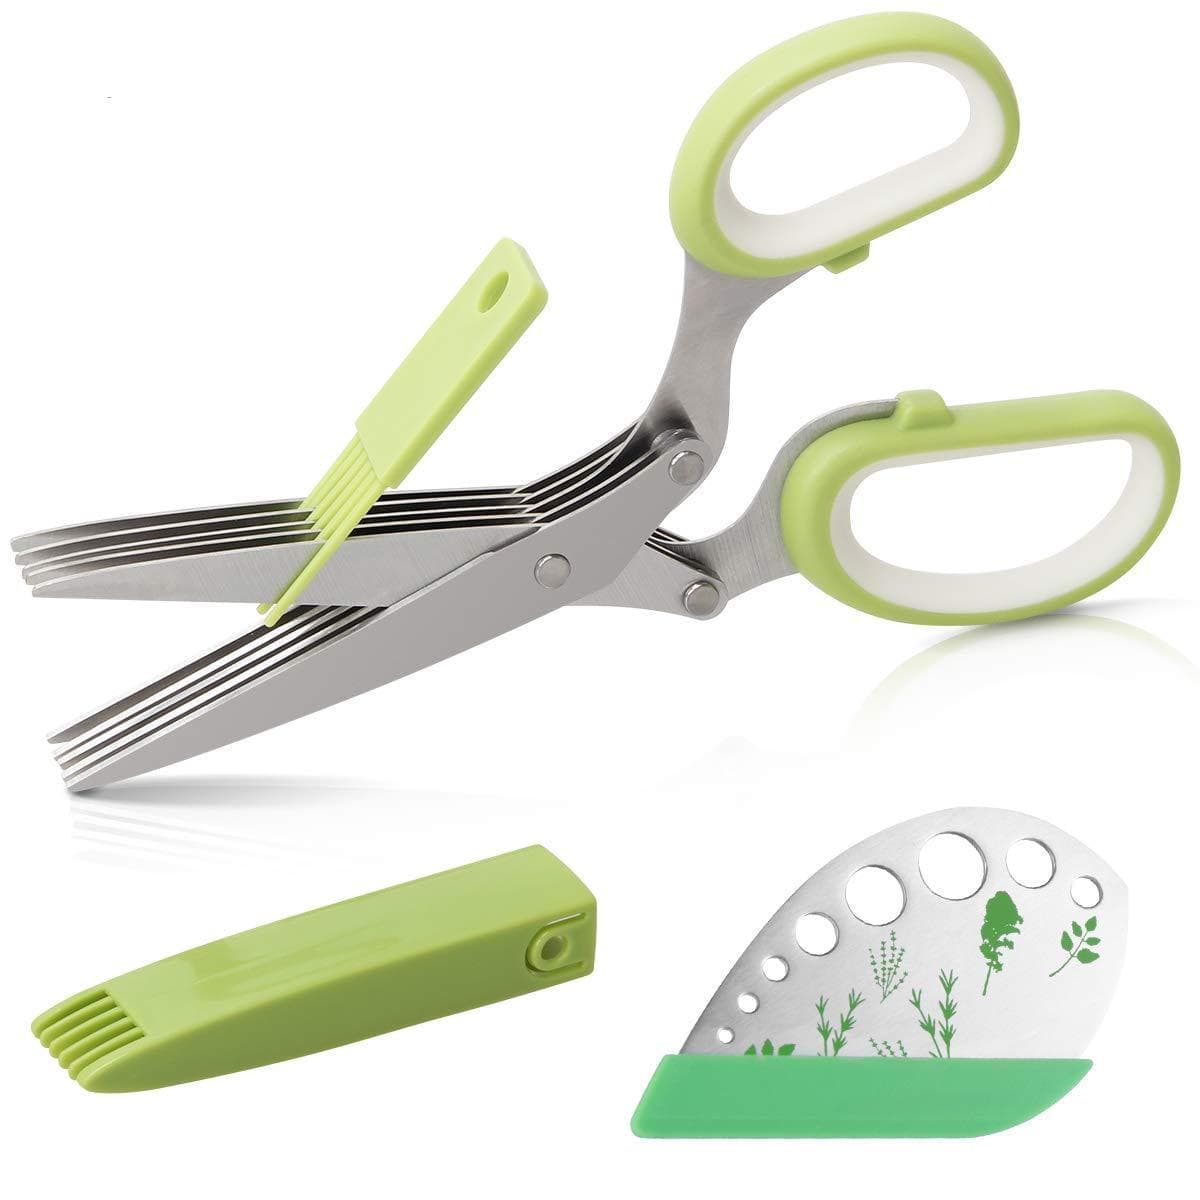 https://www.lyhoe.com/cdn/shop/products/Herb-Scissors-Stripper-Set-Kitchen-Shears-Cutter-Tools-5-Blades-Multi-Purpose-Scissors-2-IN-1_e0d0e420-6ce9-426c-815b-d4662d88254e.jpg?v=1627751977